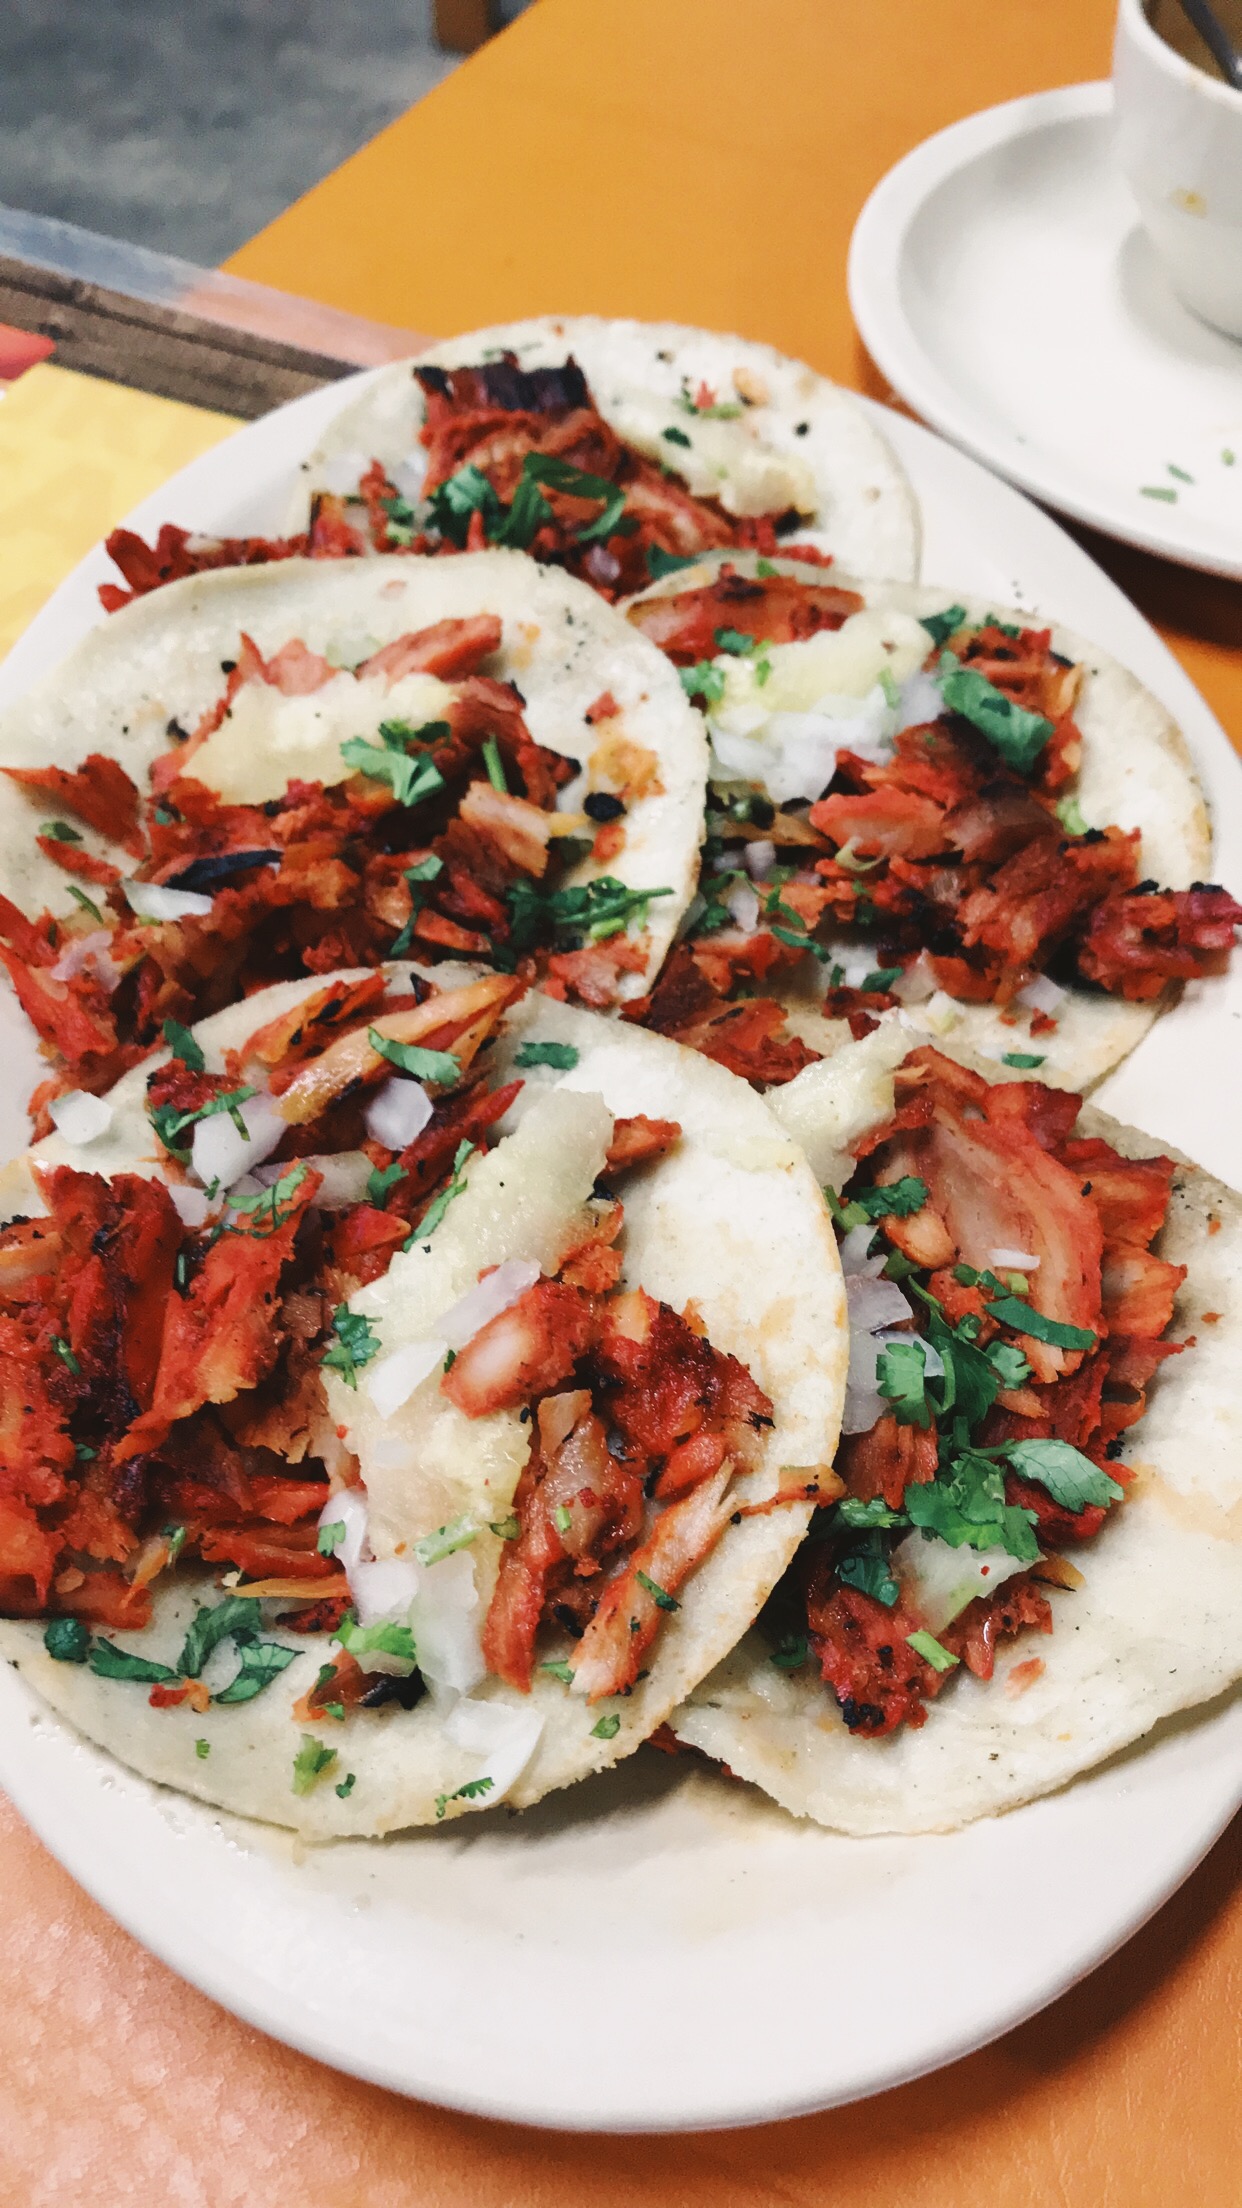 Best Tacos in Cancun